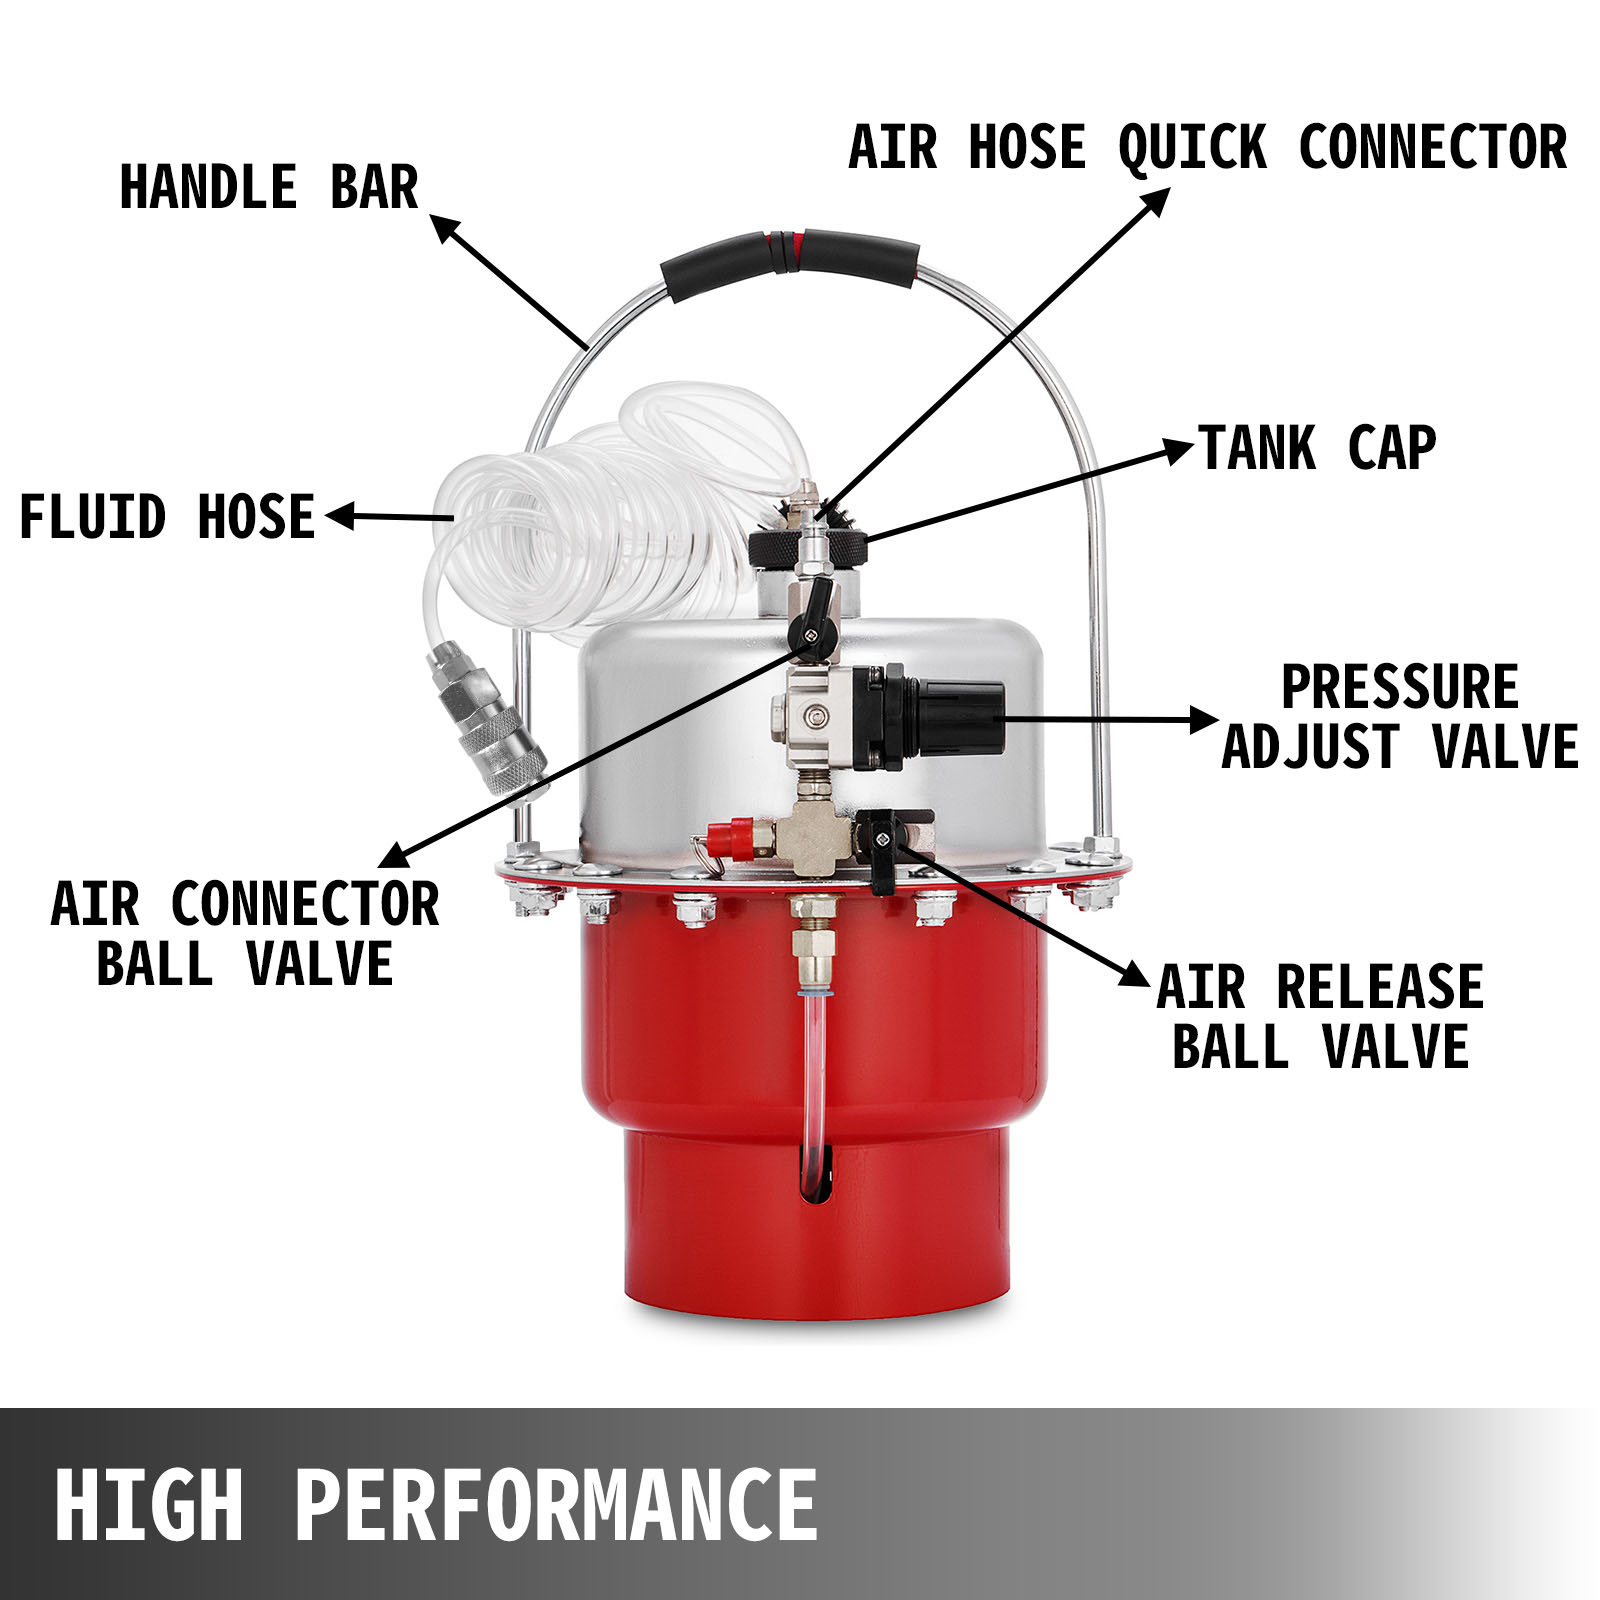 Qiilu Pneumatic Air Pressure Brake Bleeding Kit Garage Workshop Mechanics Brake Oil and Fluid Extractor Bleeder Tool 